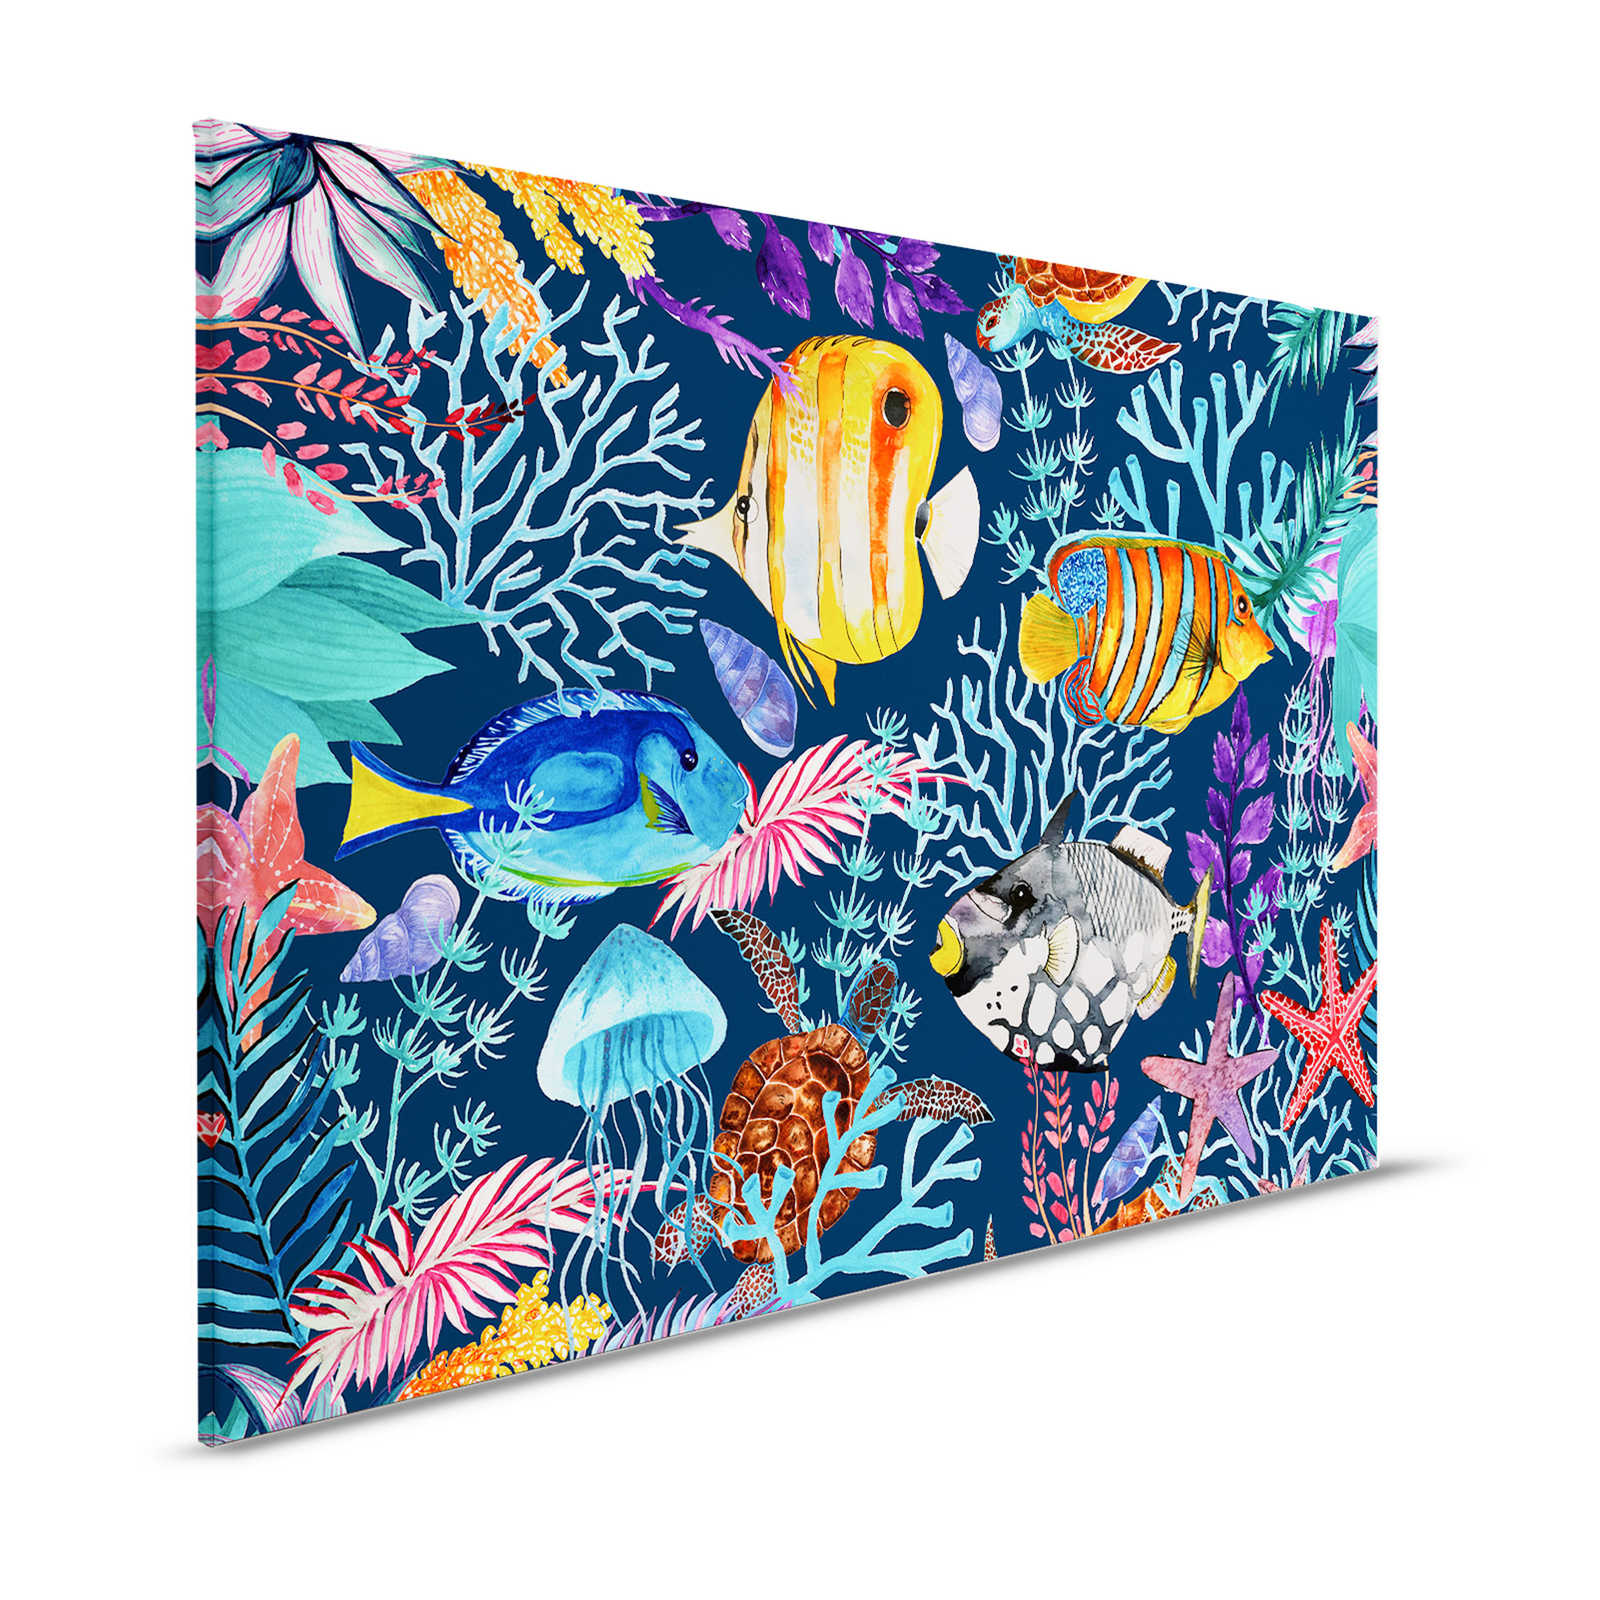 Onderwater Canvas Schilderij met kleurrijke vissen en zeesterren - 1,20 m x 0,80 m
